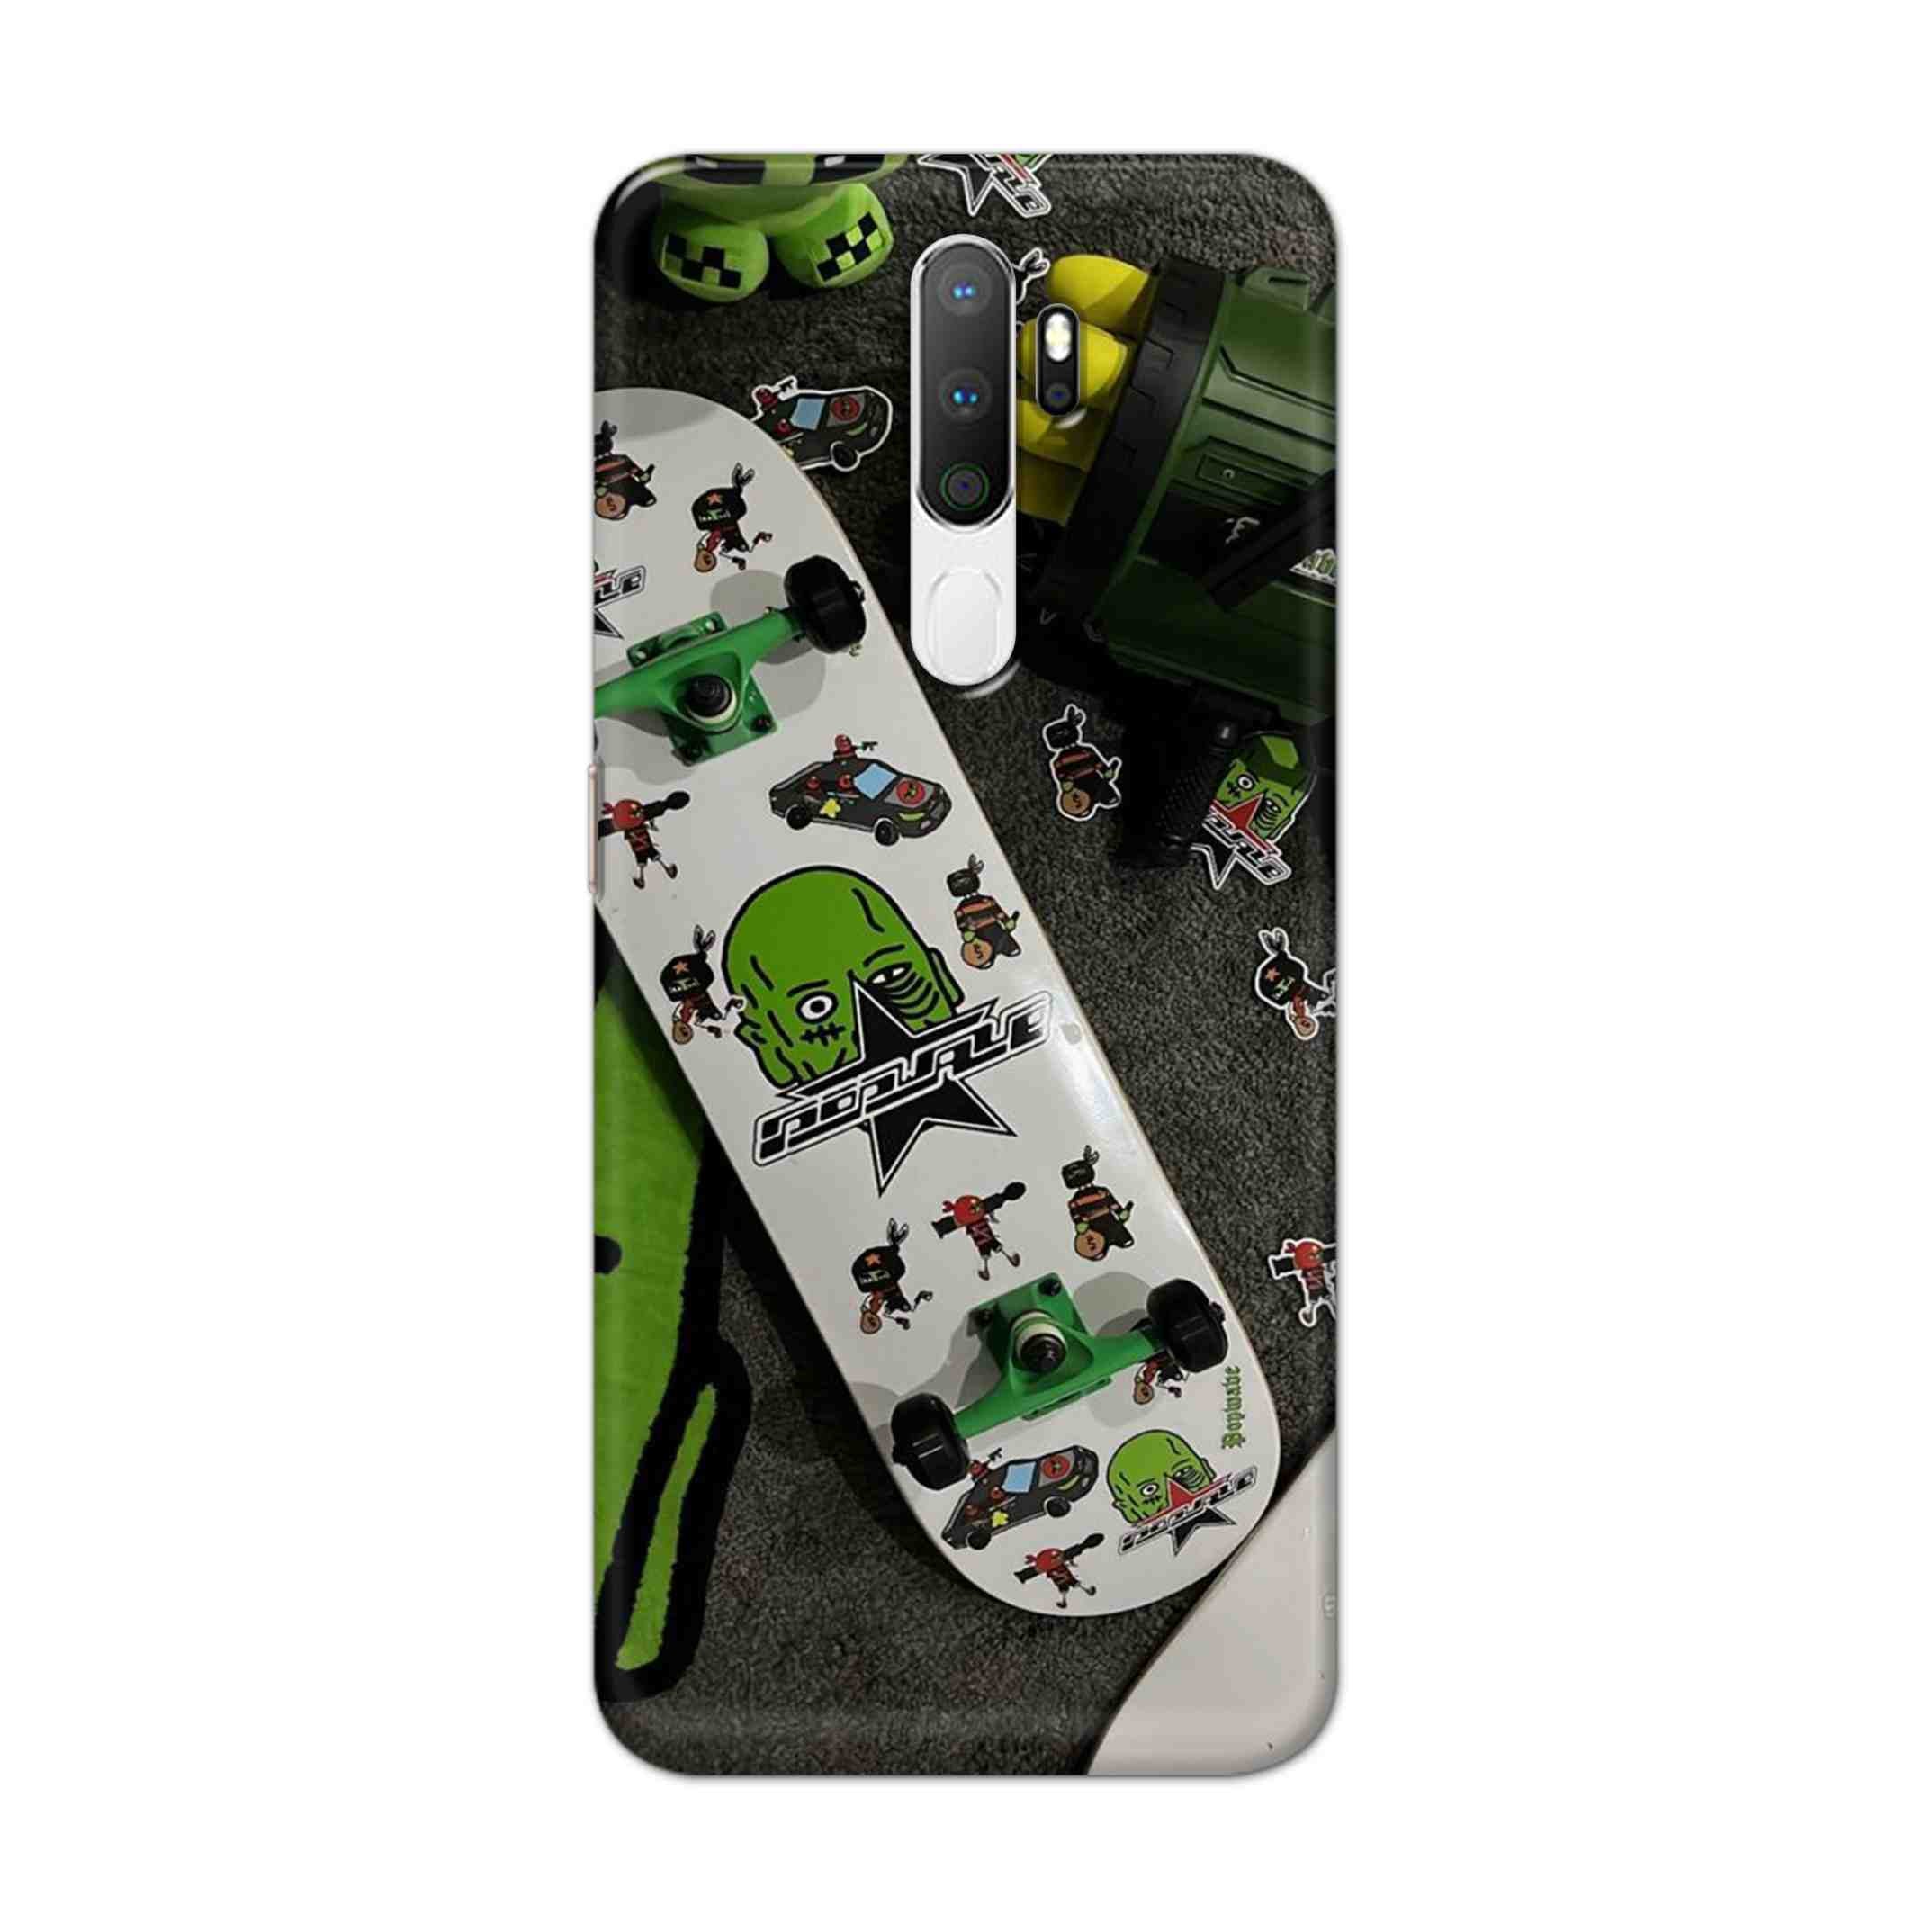 Buy Hulk Skateboard Hard Back Mobile Phone Case Cover For Oppo A5 (2020) Online